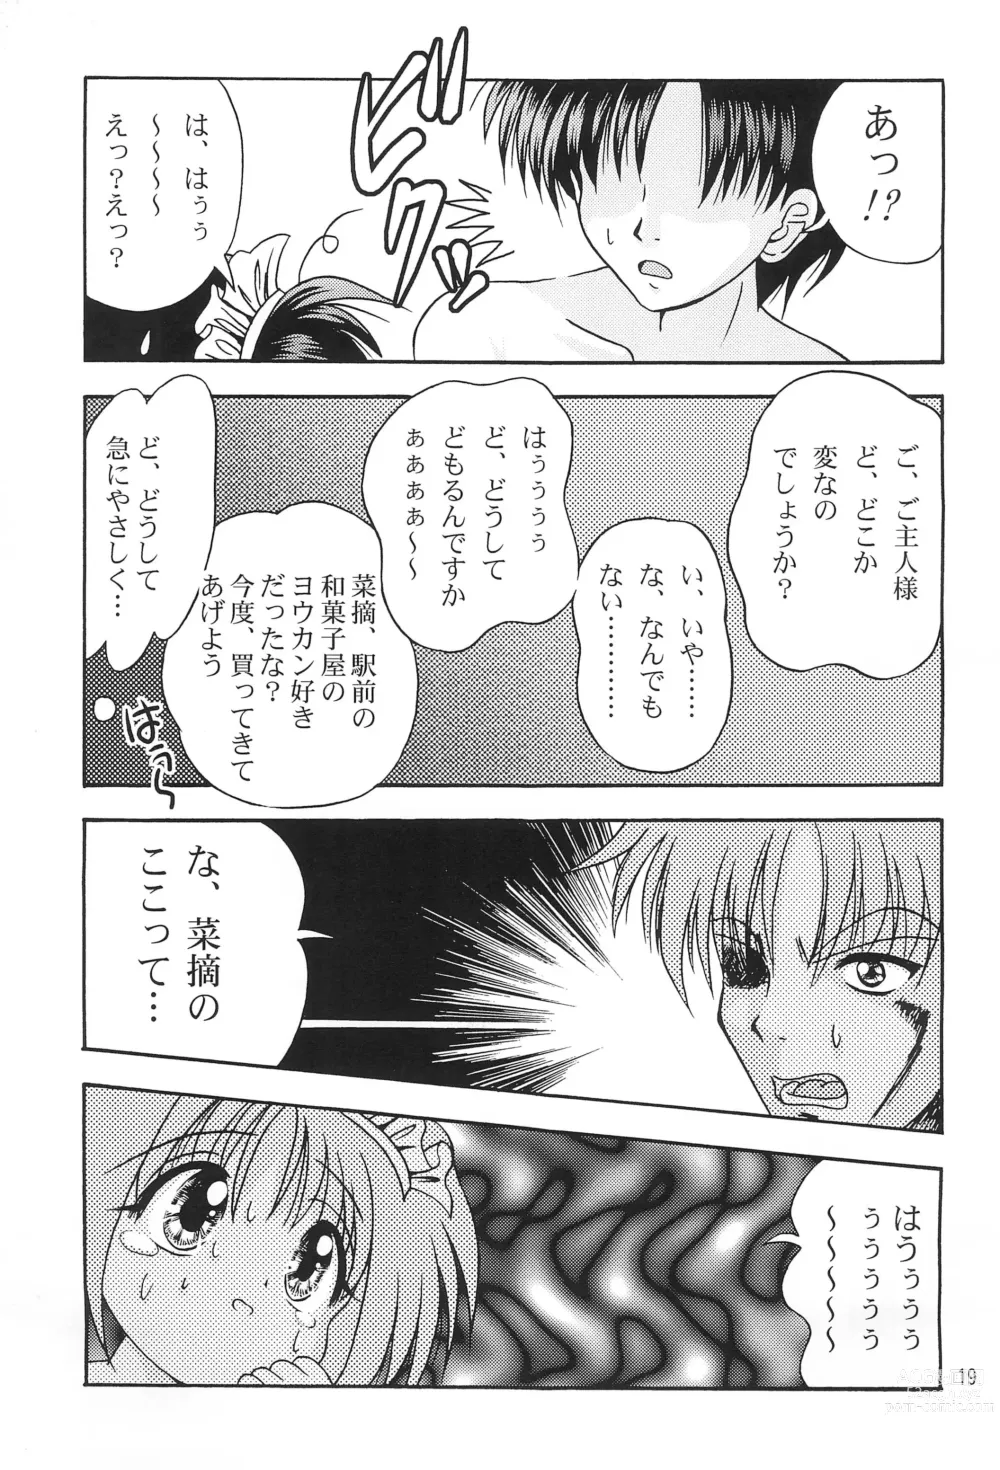 Page 21 of doujinshi Kokuin -Chouai-